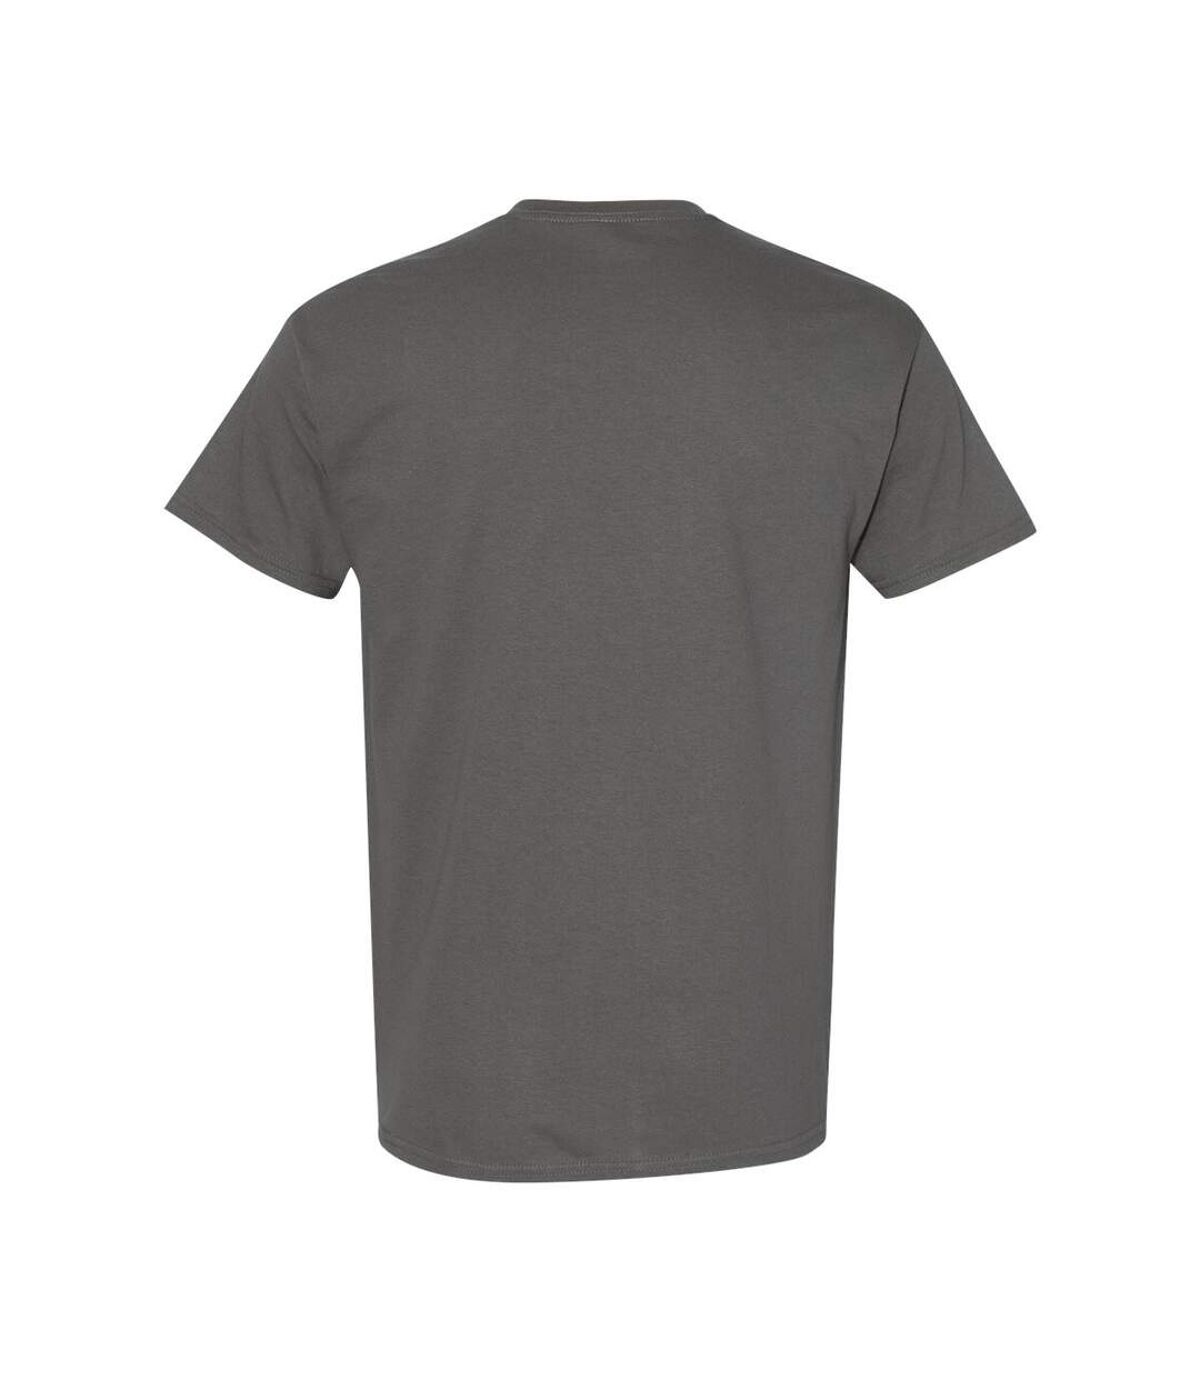 Gildan – Lot de 5 T-shirts manches courtes - Hommes (Gris foncé) - UTBC4807